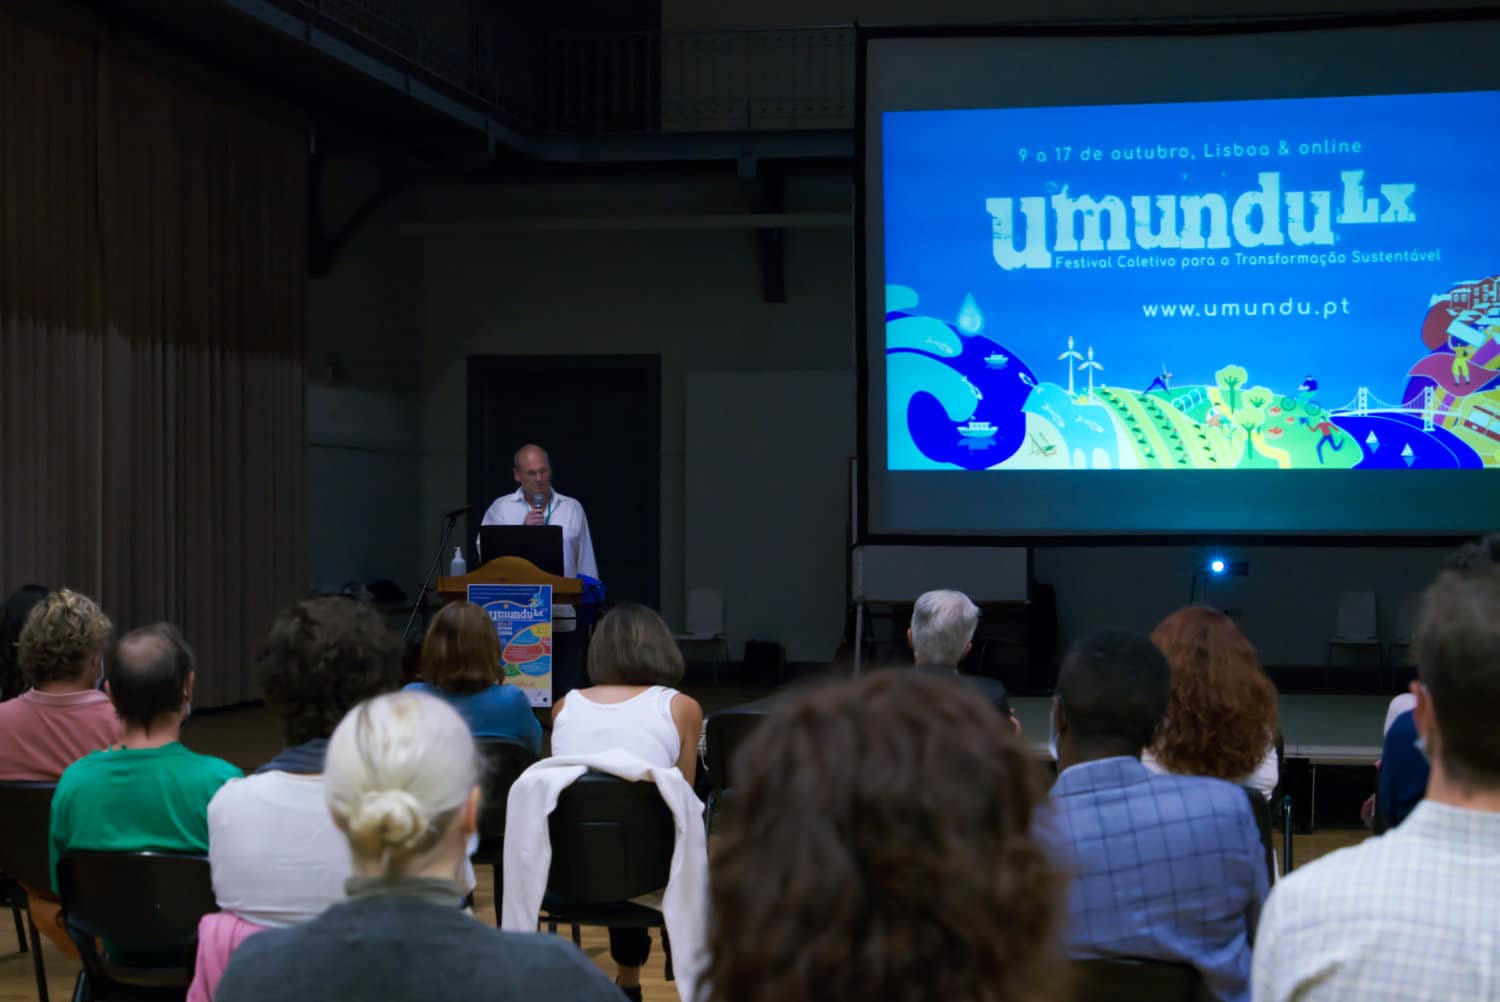 Festival Umundu Lx 2020 arrancou no fim de semana em Lisboa e online